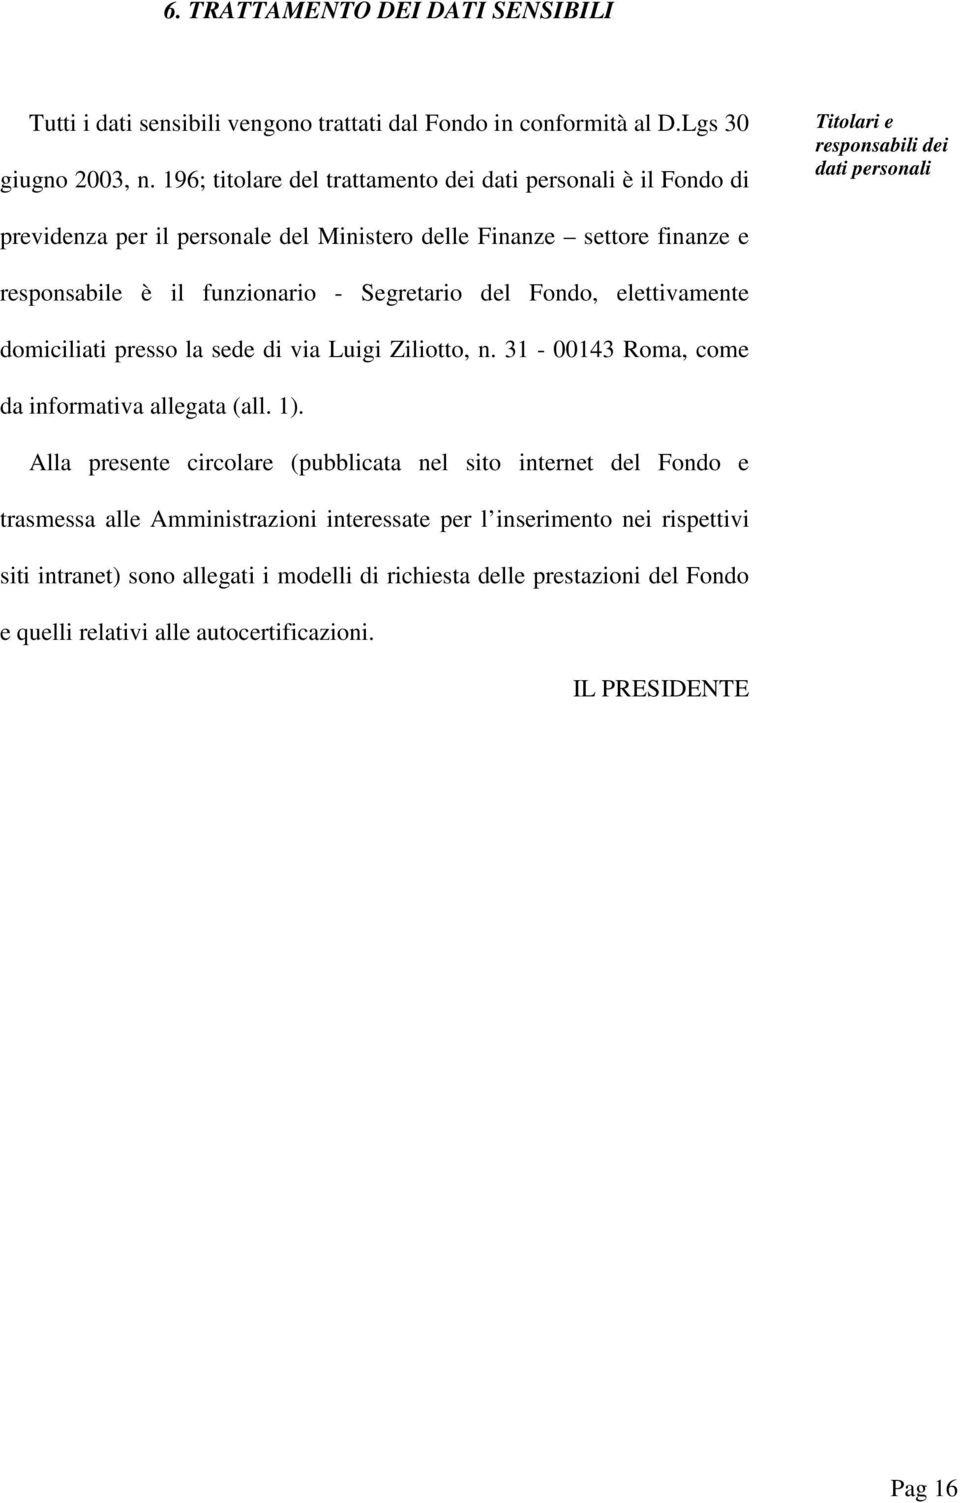 è il funzionrio - Segretrio del Fondo, elettivmente domiciliti presso l sede di vi Luigi Ziliotto, n. 31-00143 Rom, come d informtiv llegt (ll. 1).